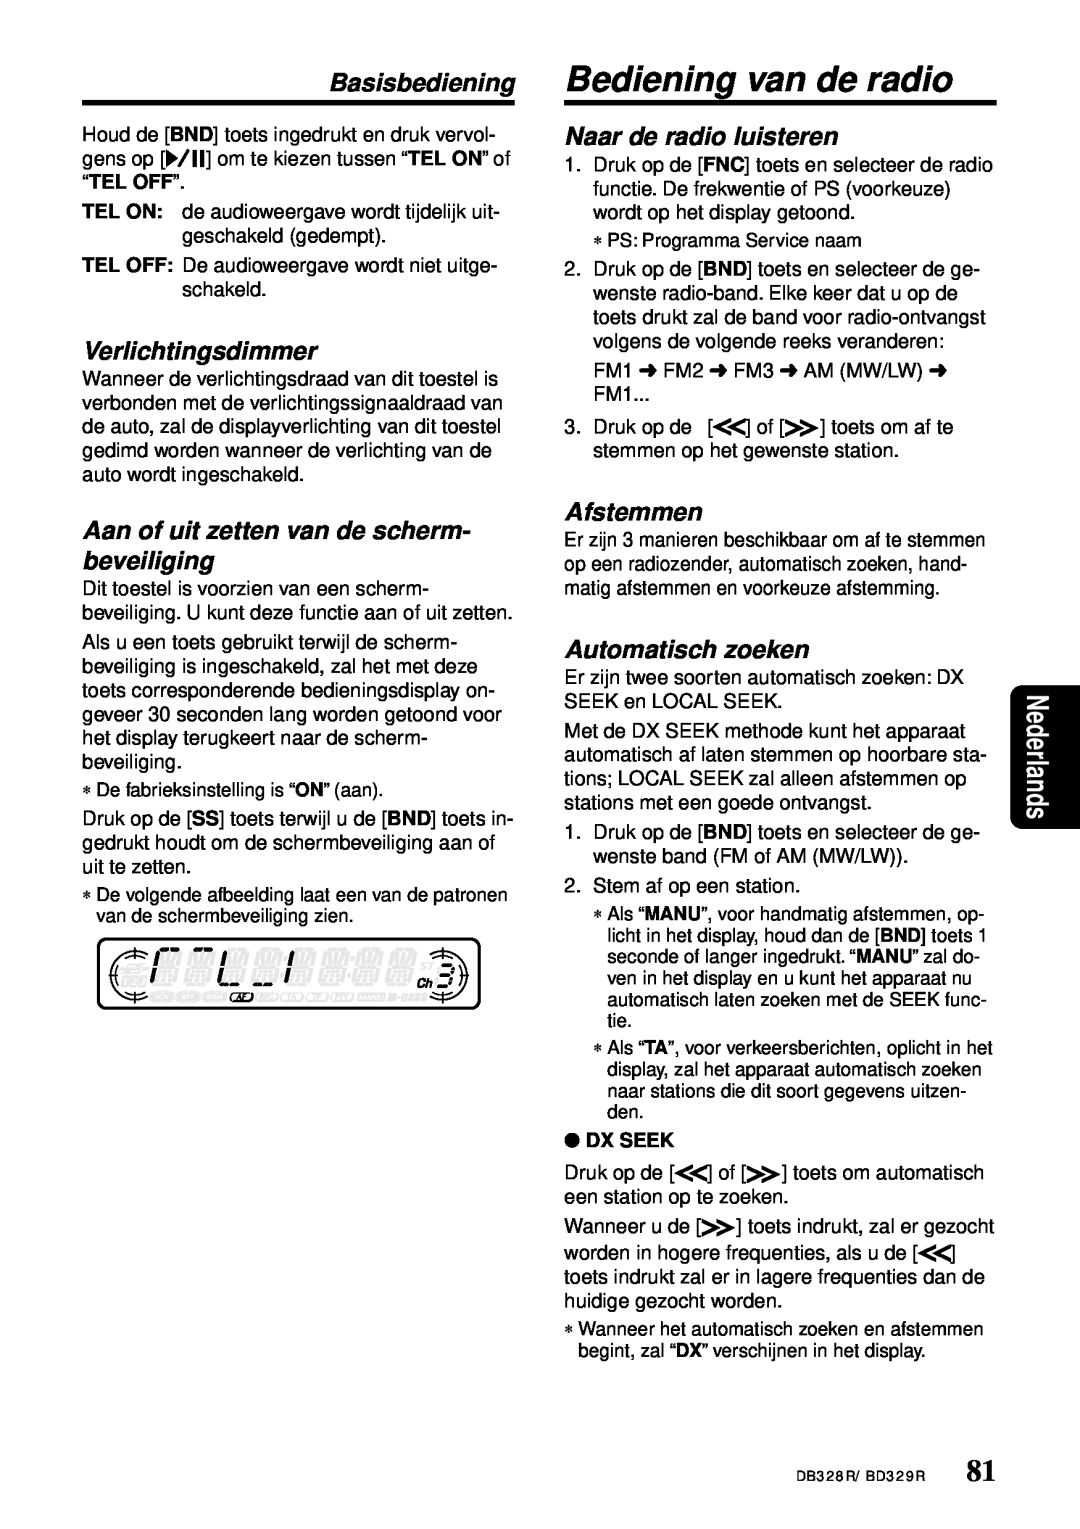 Clarion DB328R Basisbediening Bediening van de radio, Verlichtingsdimmer, Aan of uit zetten van de scherm- beveiliging 